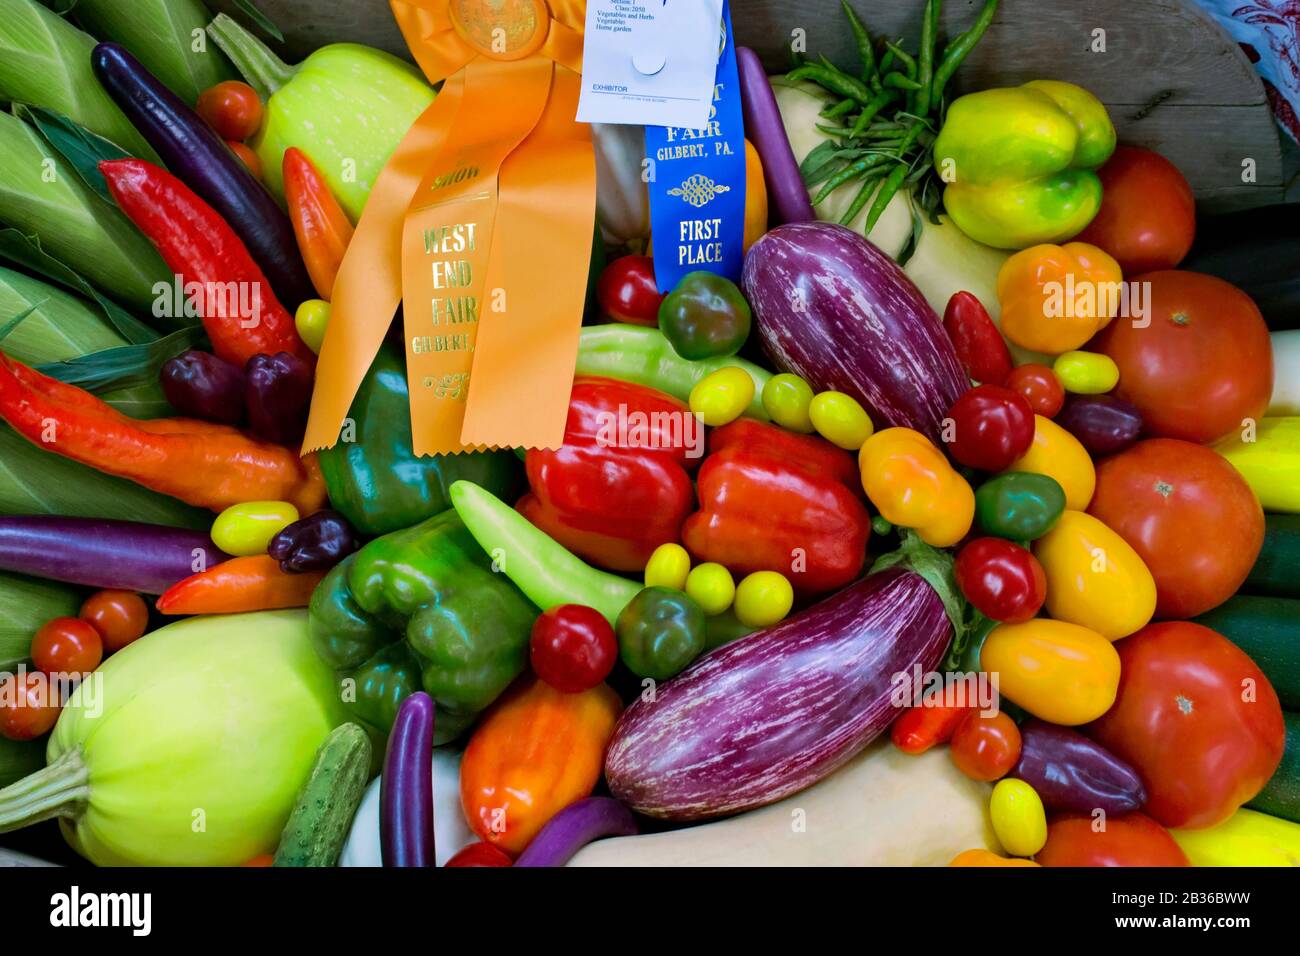 Una varietà di verdure vince il meglio in esposizione alla fiera del West End a Gilbert, Pennsylvania Foto Stock